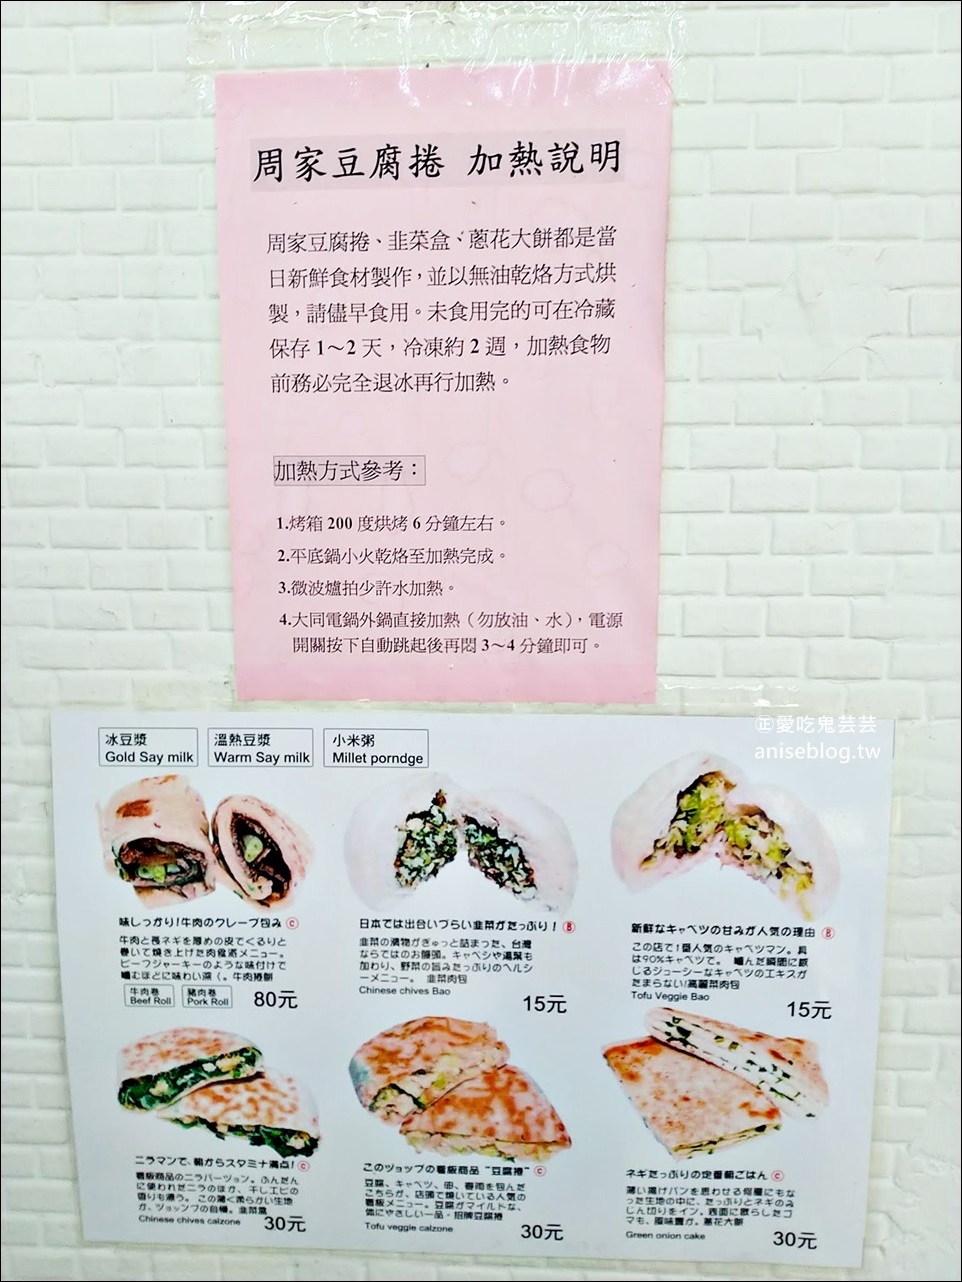 周家豆腐捲，乾烙韭菜盒、牛肉捲餅、蔥油餅，台北信義區光復市場美食(姊姊食記)